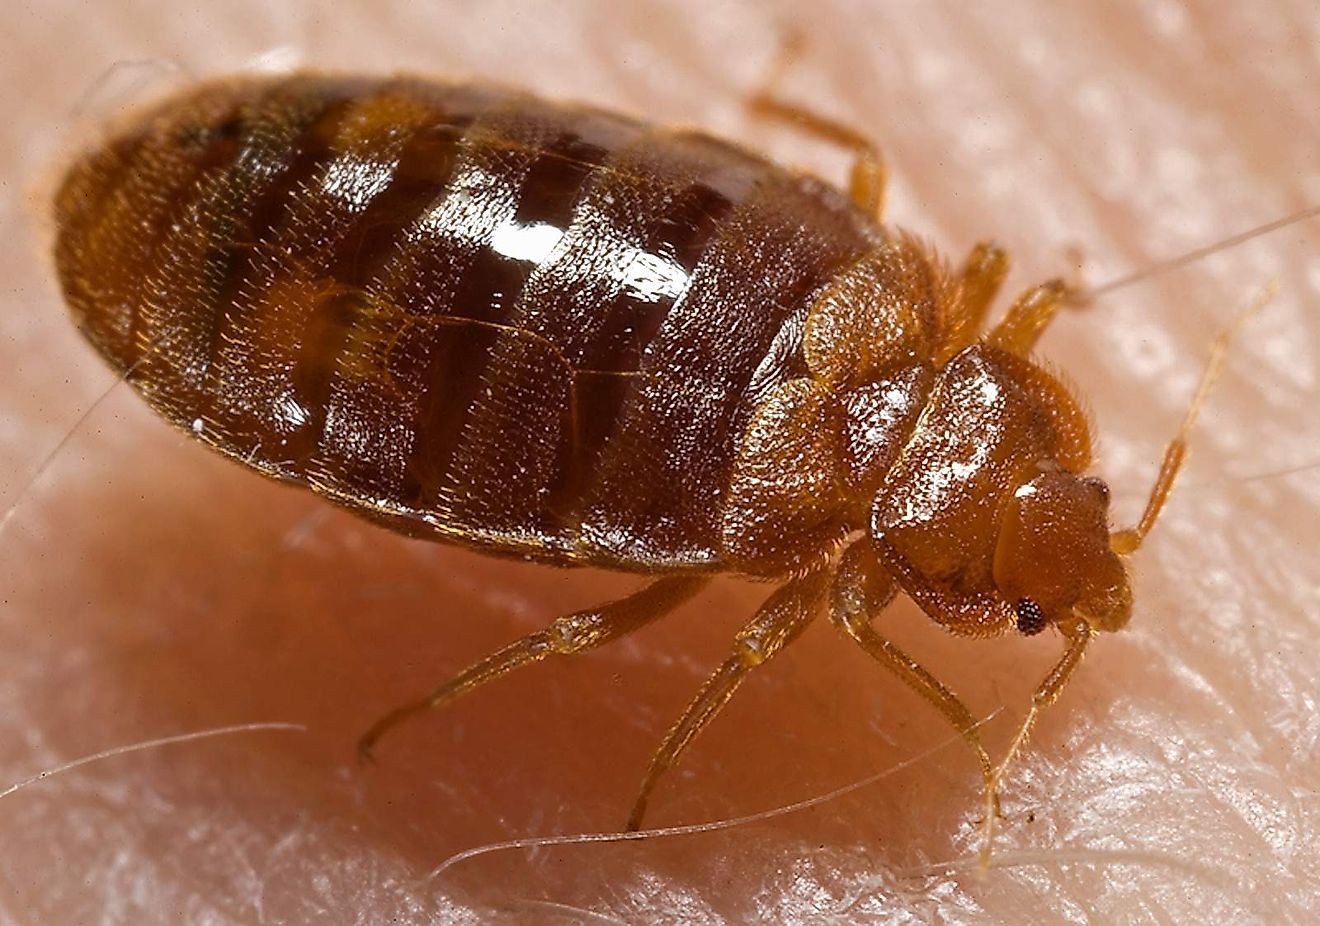 What Do Bed Bugs Look Like? WorldAtlas